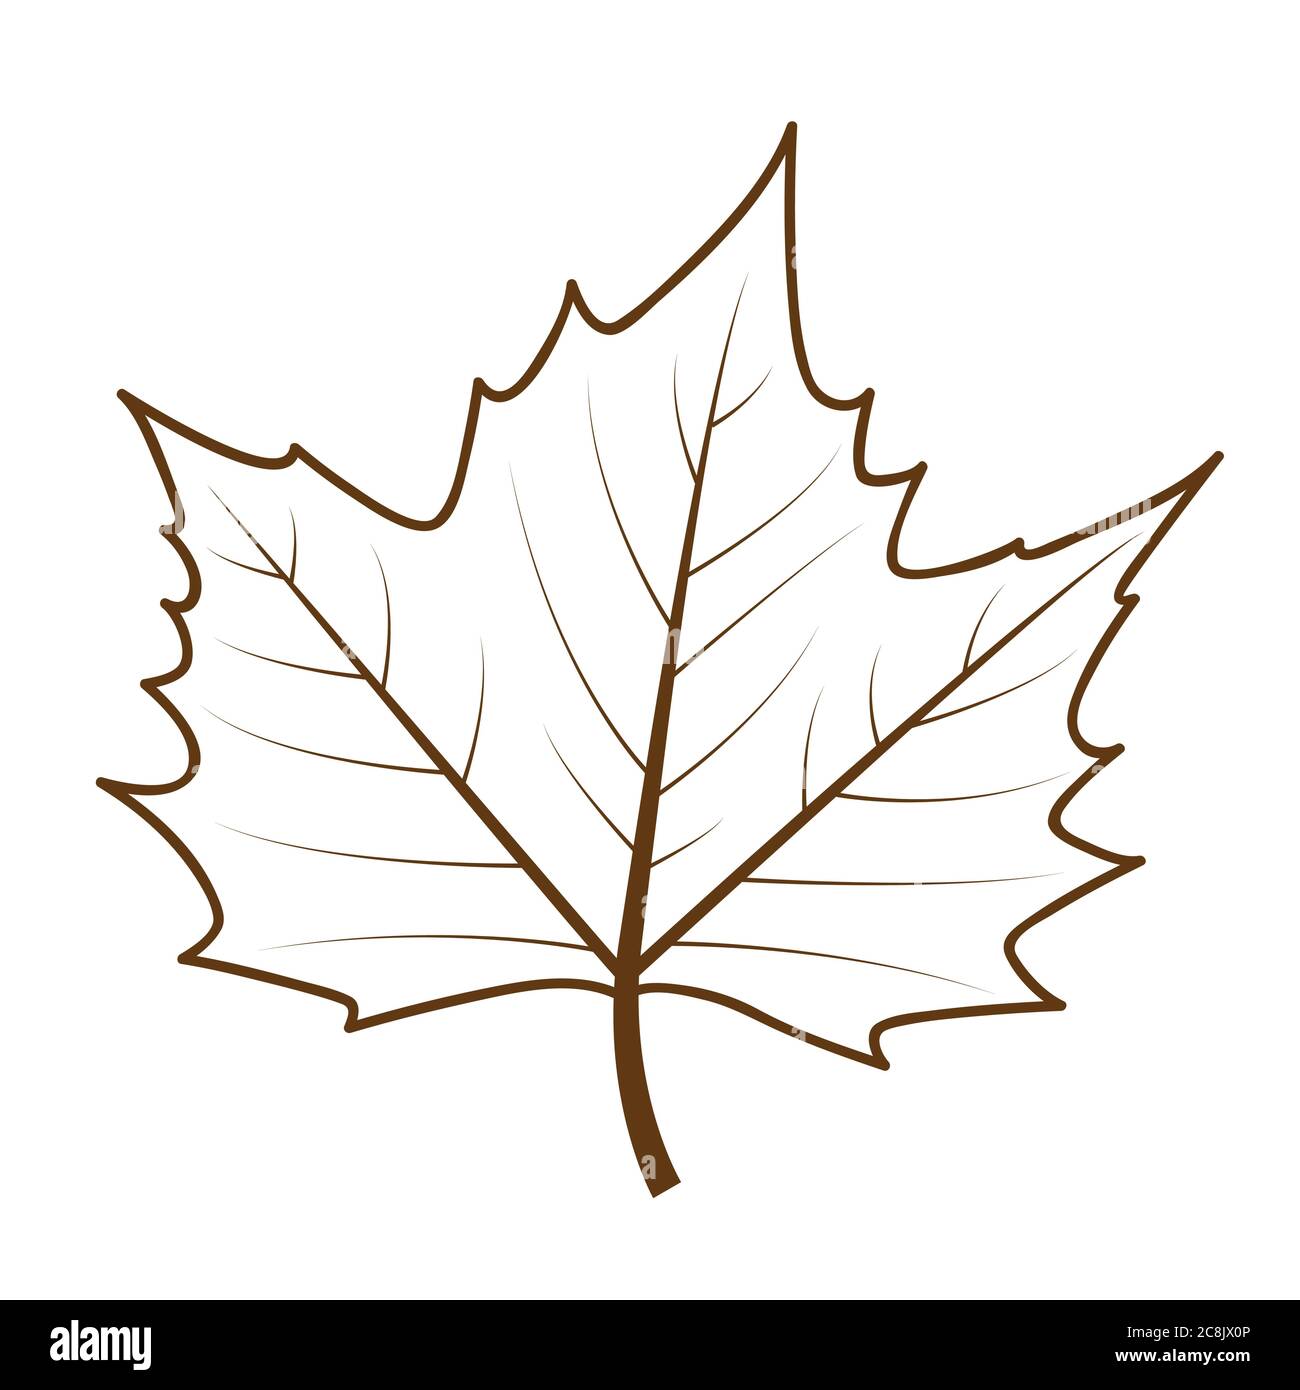 leaf outline drawing